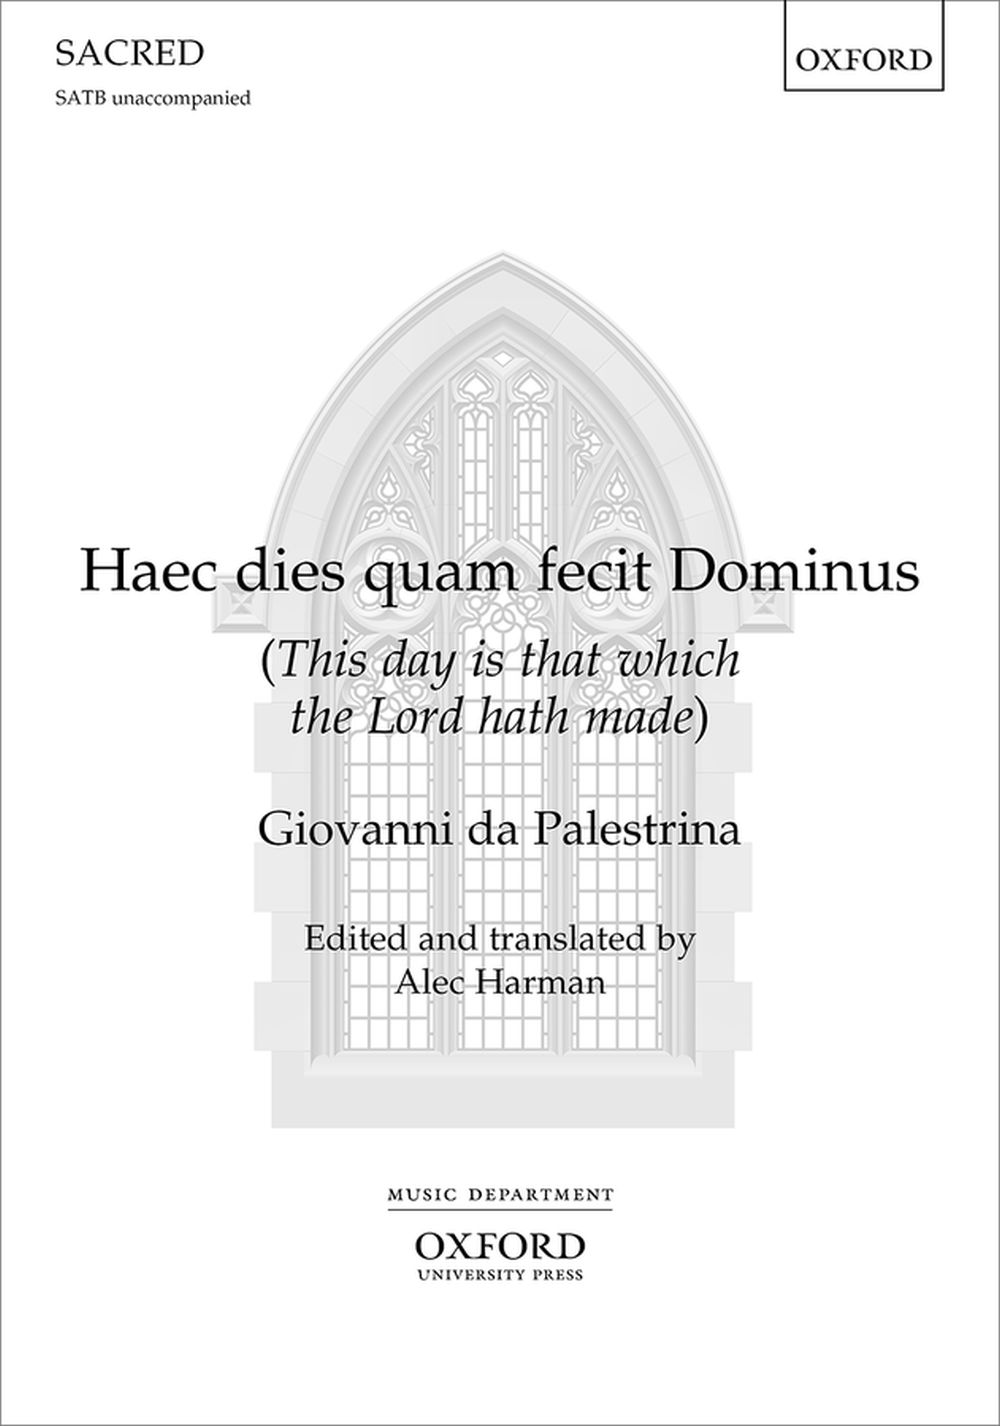 Giovanni da Palestrina: Haec dies quam fecit Dominus: SATB: Vocal Score